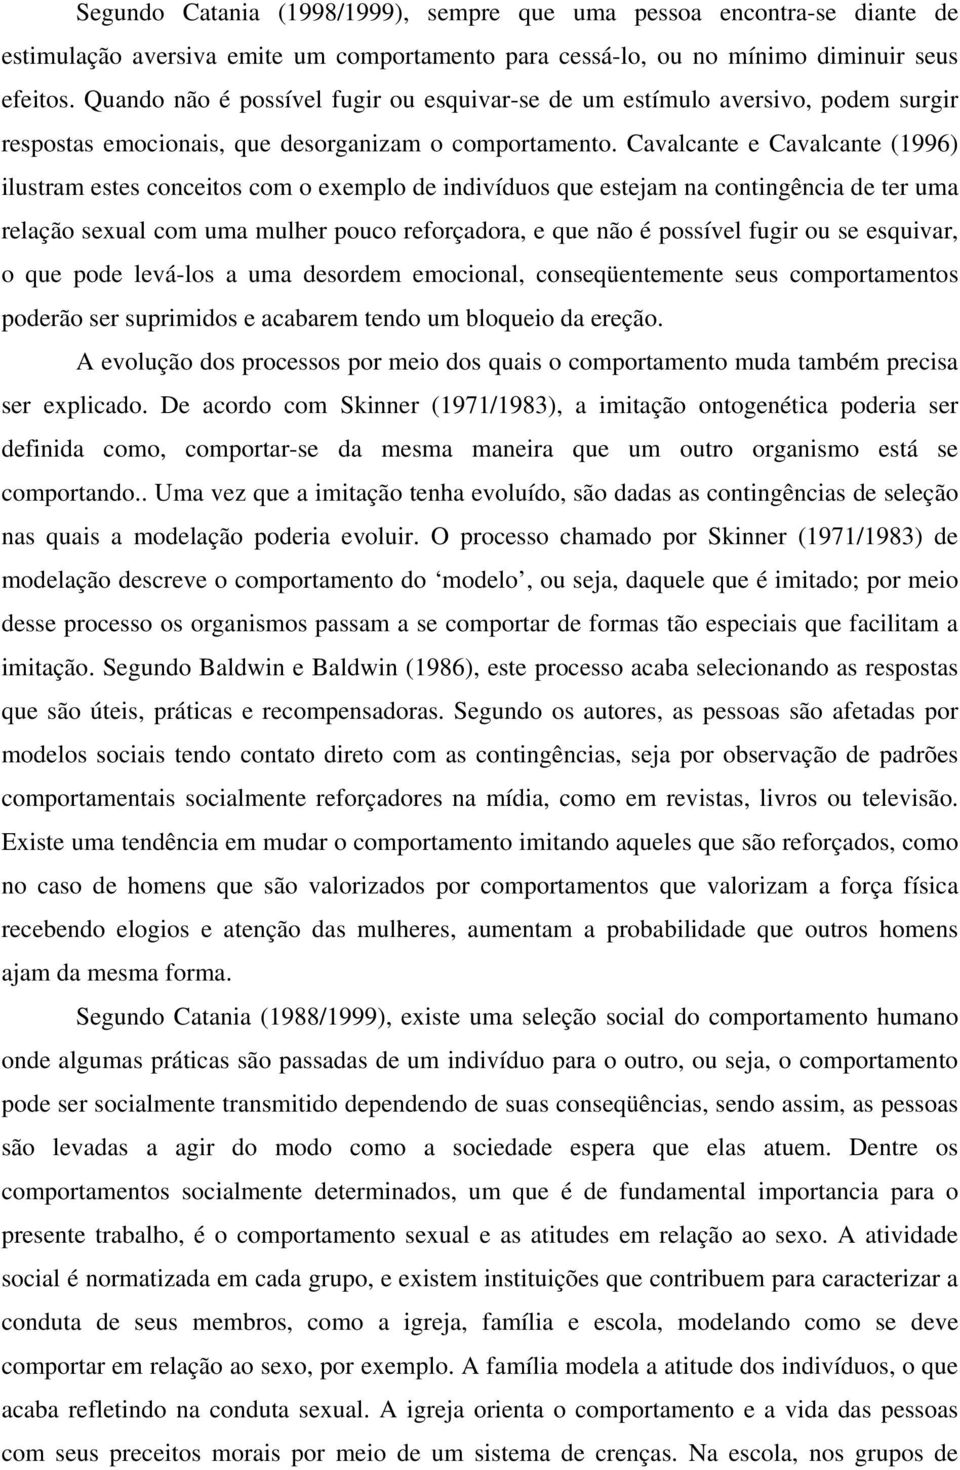 Cavalcante e Cavalcante (1996) ilustram estes conceitos com o exemplo de indivíduos que estejam na contingência de ter uma relação sexual com uma mulher pouco reforçadora, e que não é possível fugir